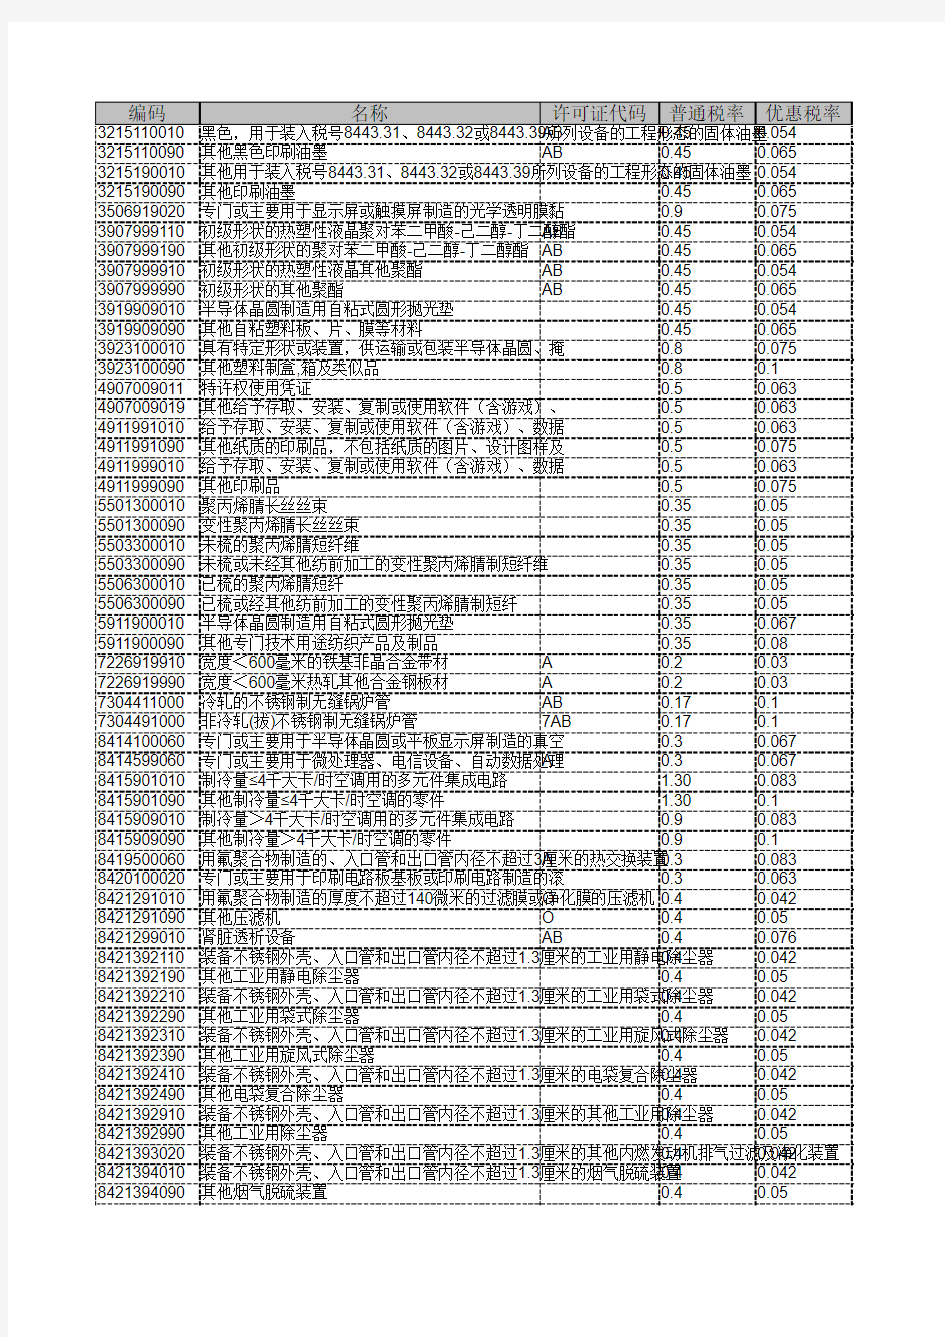 海关商品编码对照表(9月15号相对9月14号变动)